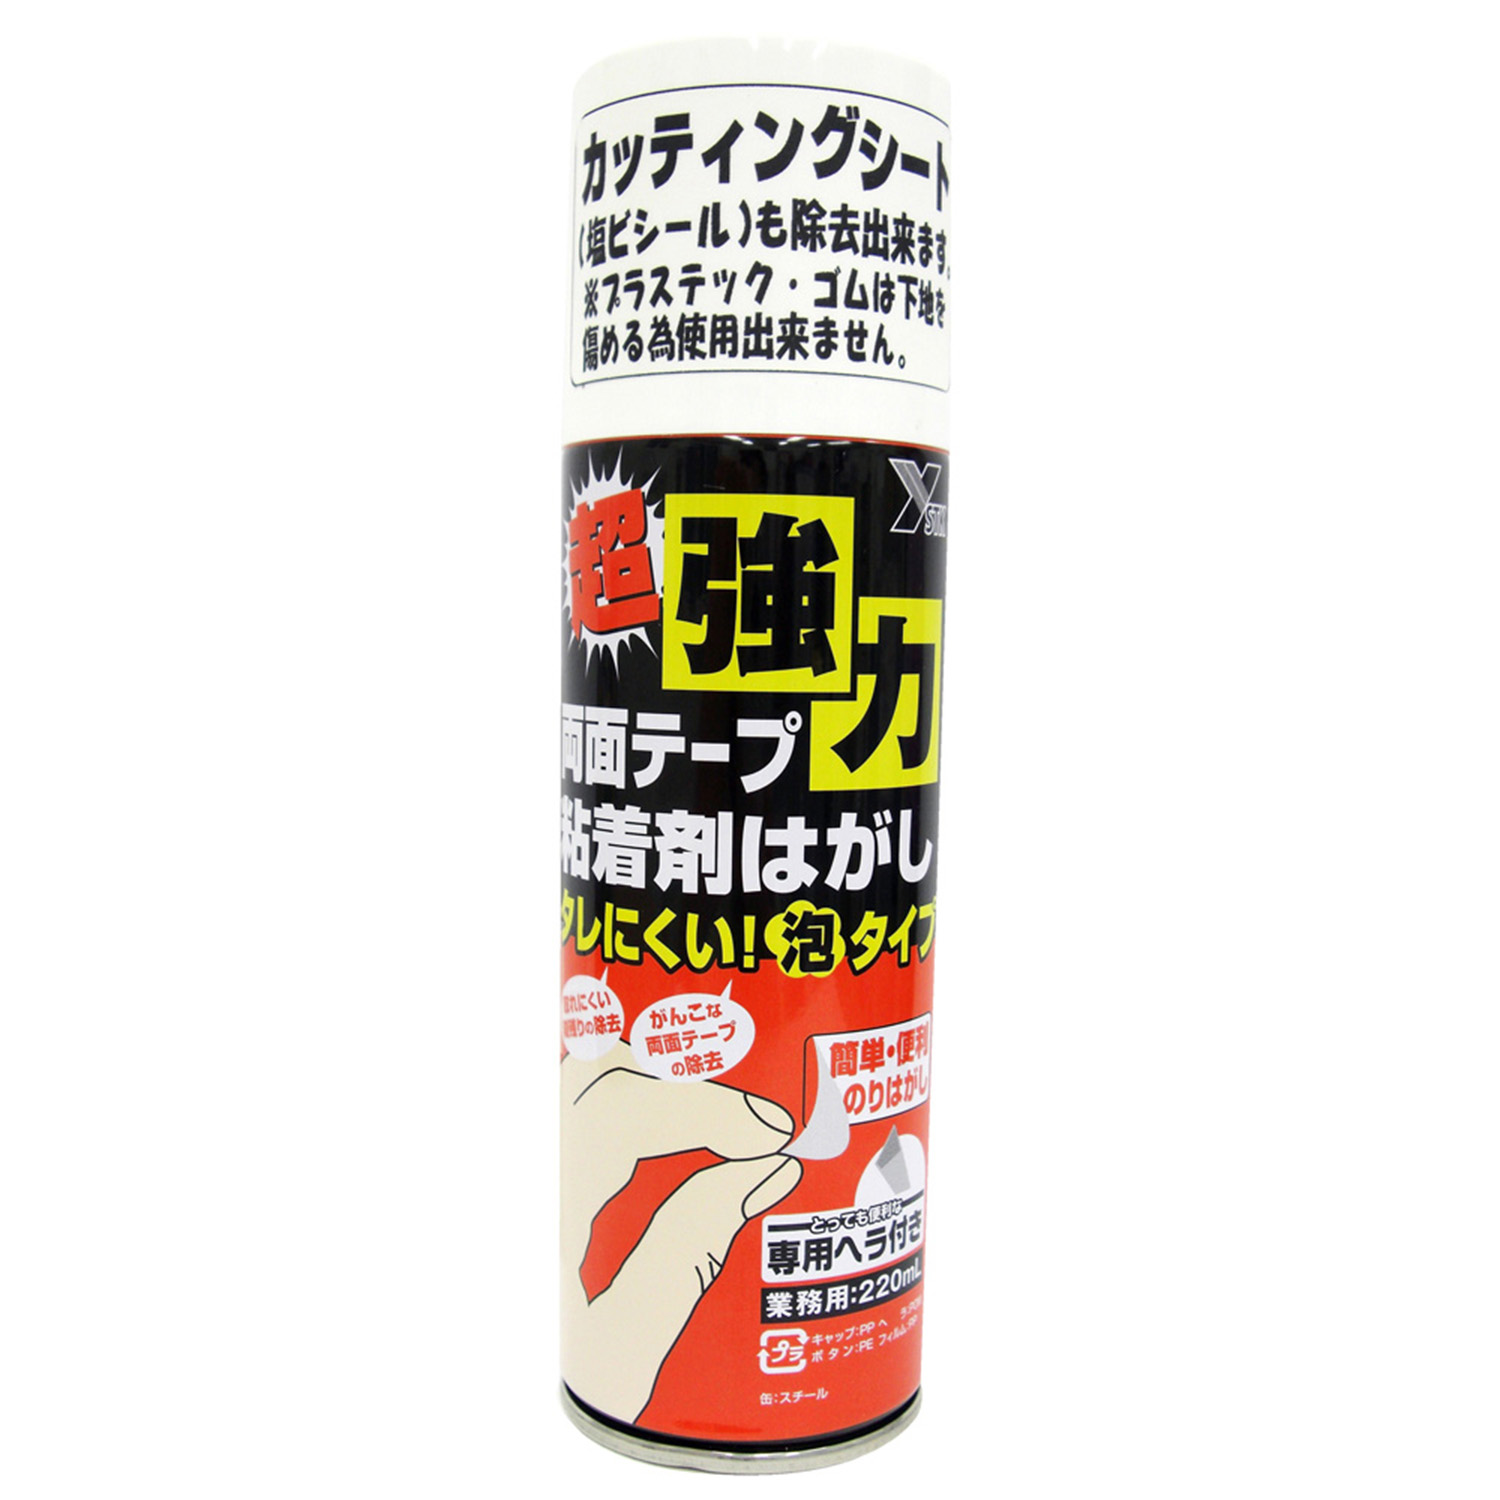 塩ビ板通販・販売 | MISUMI-VONA【ミスミ】